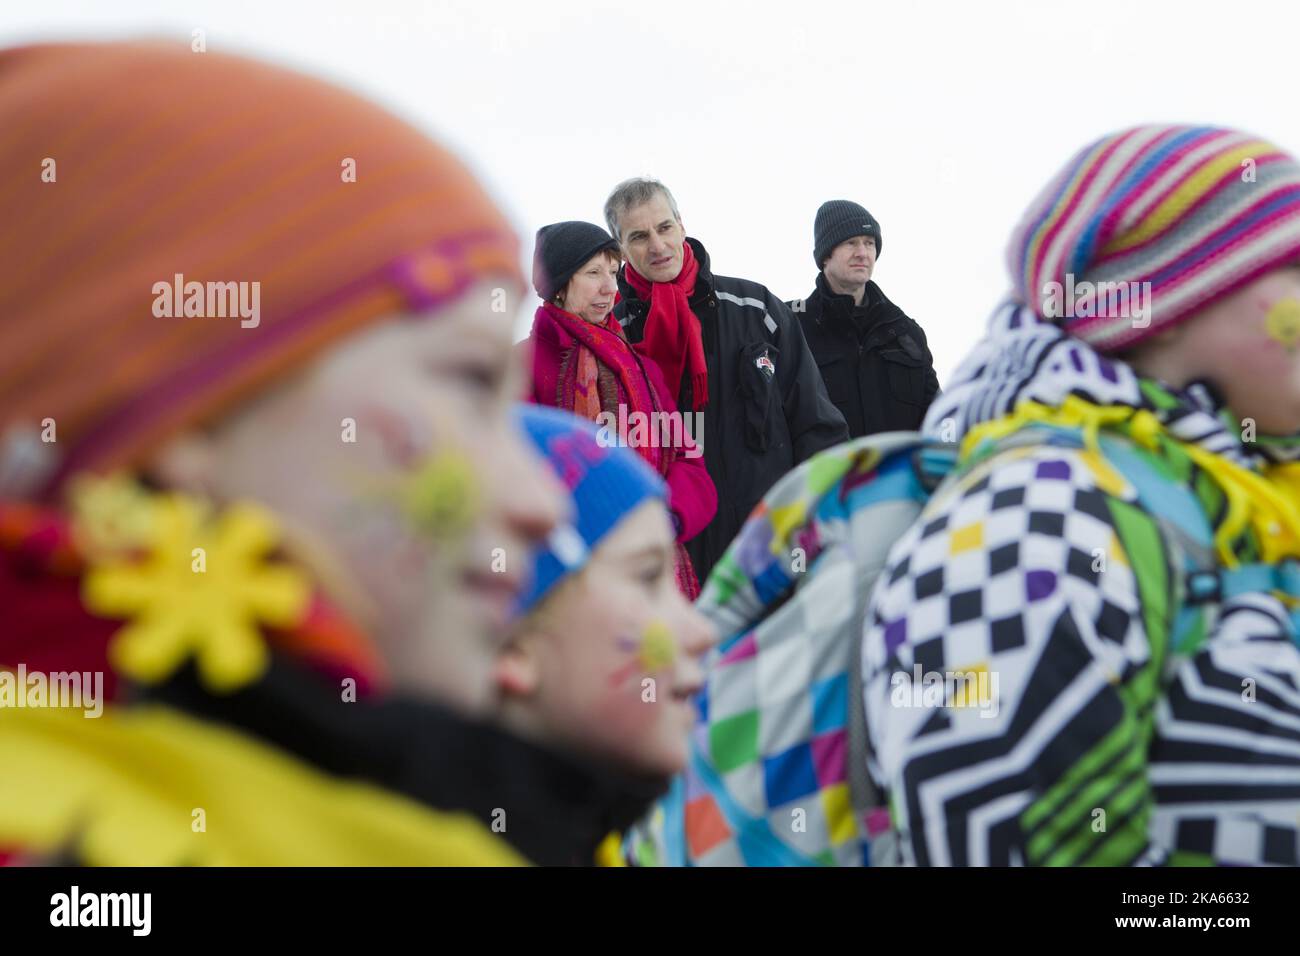 Svalbard 20120308. Il Ministro degli esteri norvegese Jonas Gahr Stoere e l'Alto rappresentante dell'Unione per gli affari esteri e la politica di sicurezza Catherine Ashton insieme ai bambini in costume durante la celebrazione della "Giornata del Sole" a Longyearbyen, Svalbard. Foto: Berit Roald / NTB scanpix Foto Stock